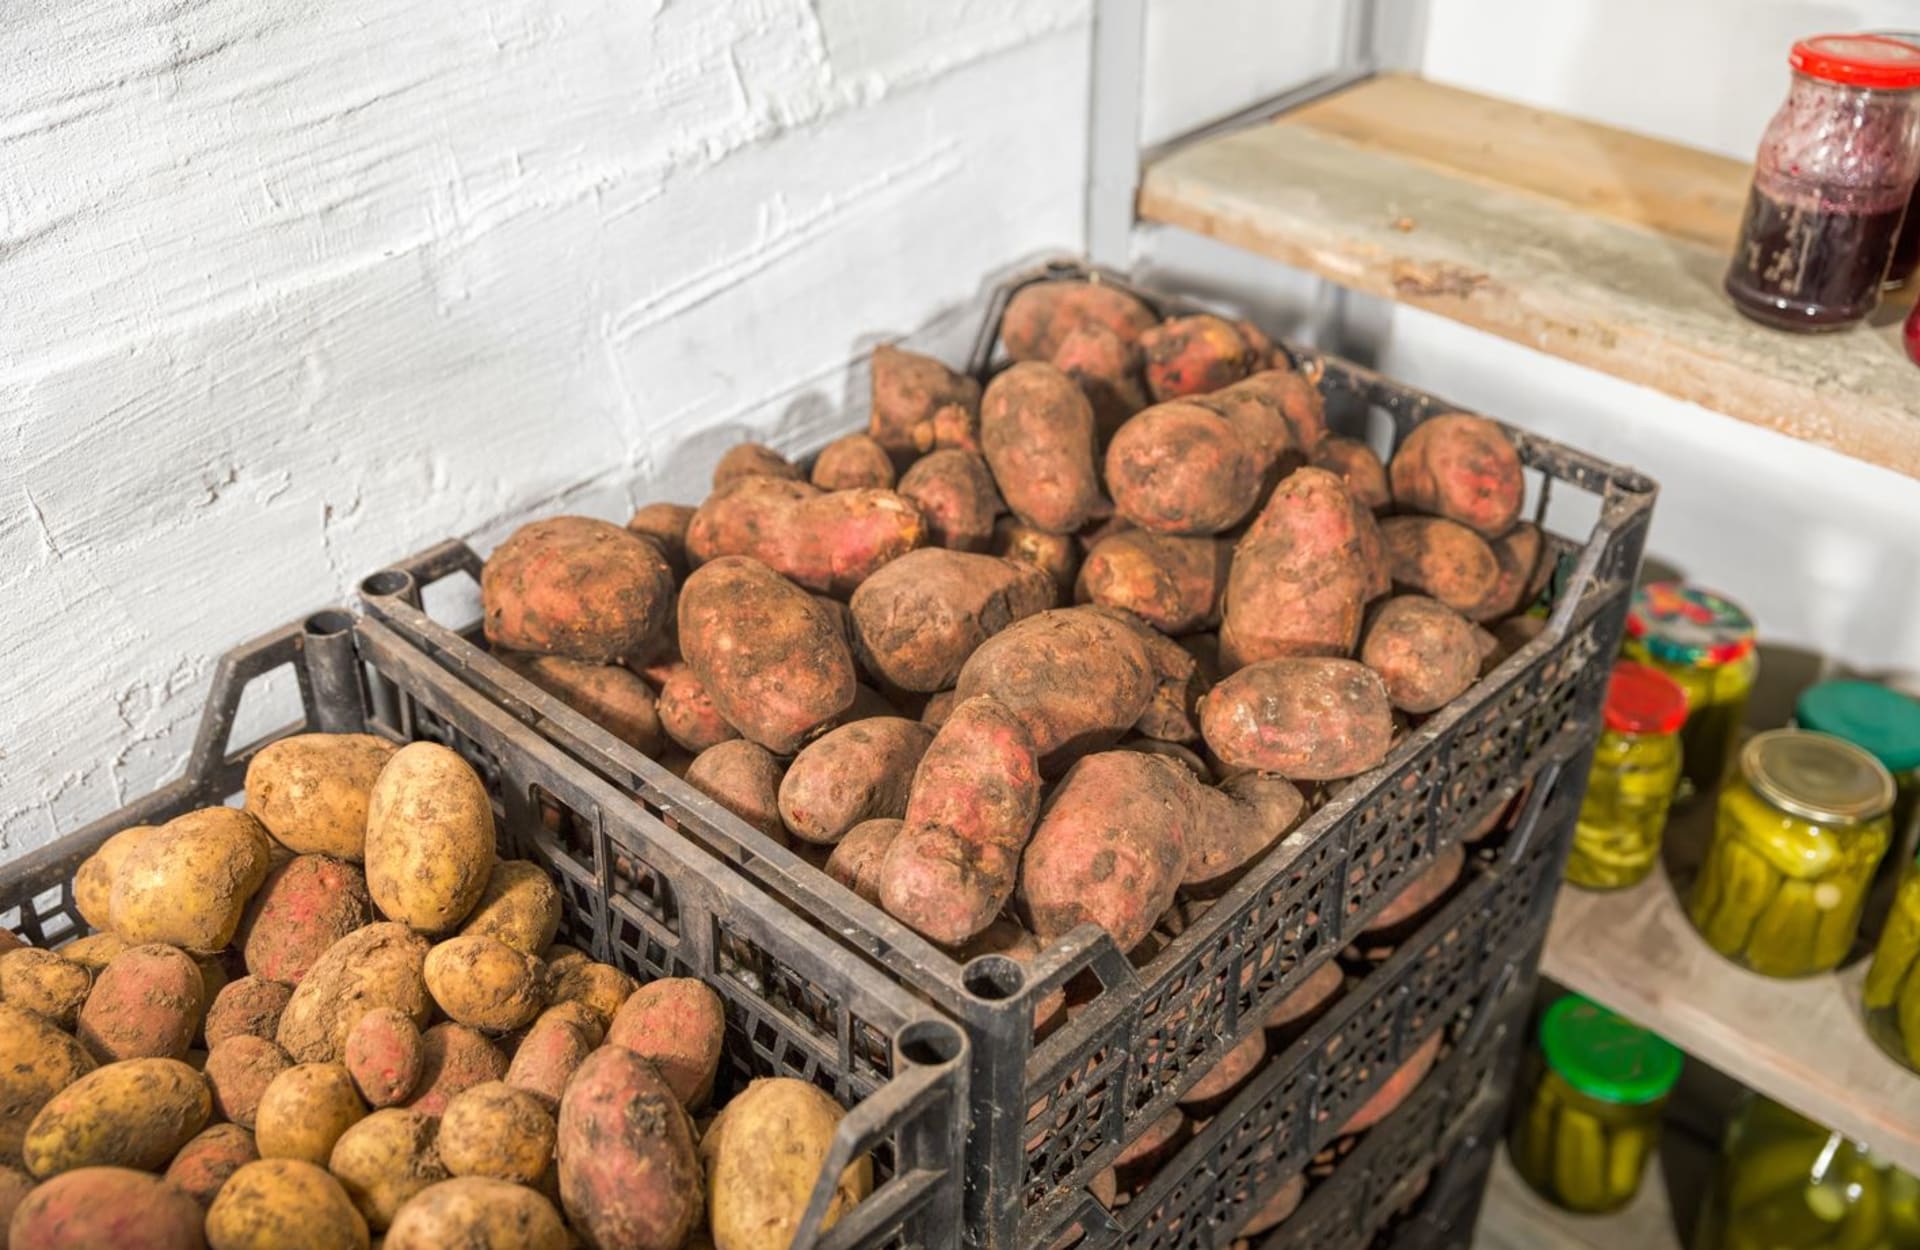 Suchyý chladný sklep je základem úspěchu při uskladnění brambor